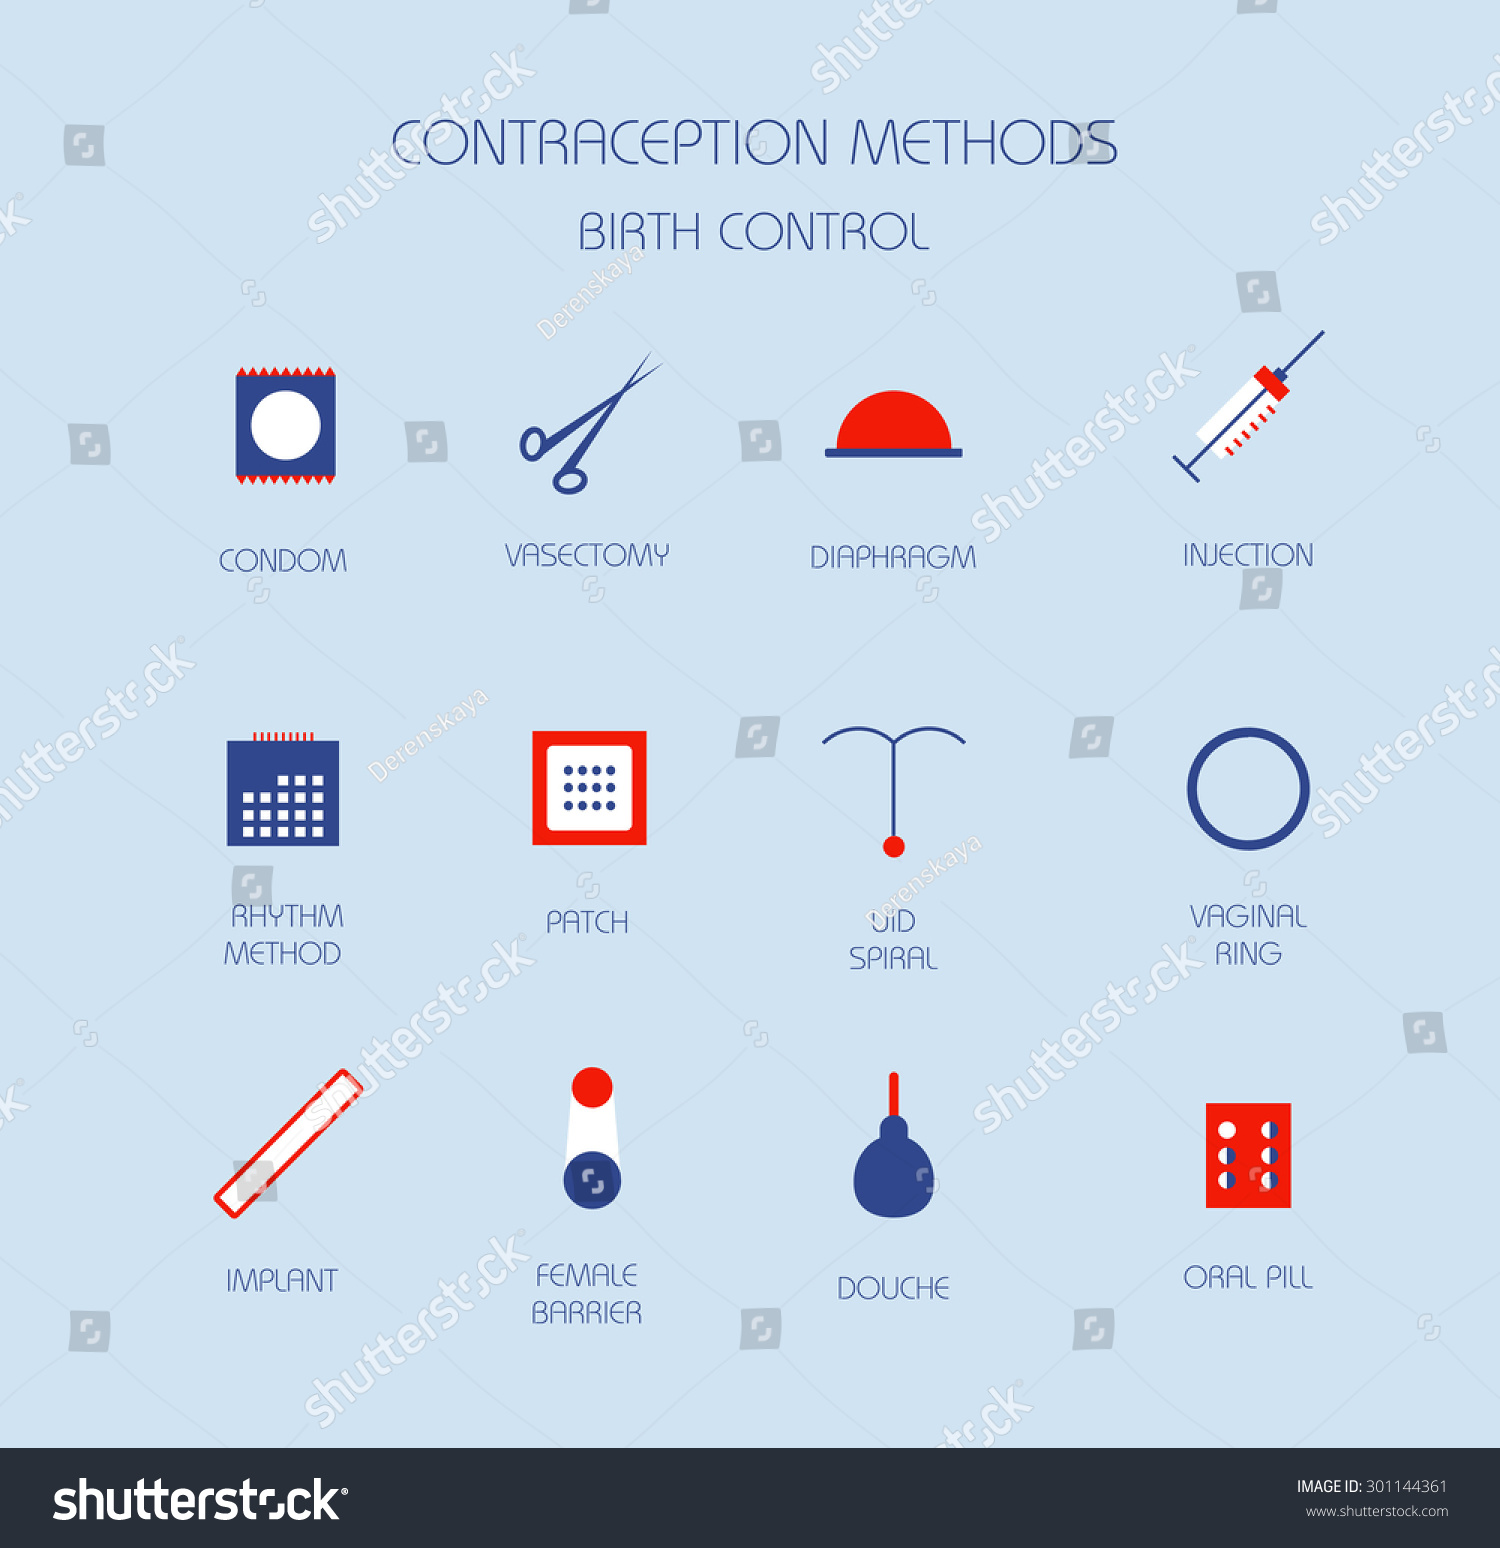 Contraception Methods Birth Control Vector Icon Stock Vector Royalty 7673